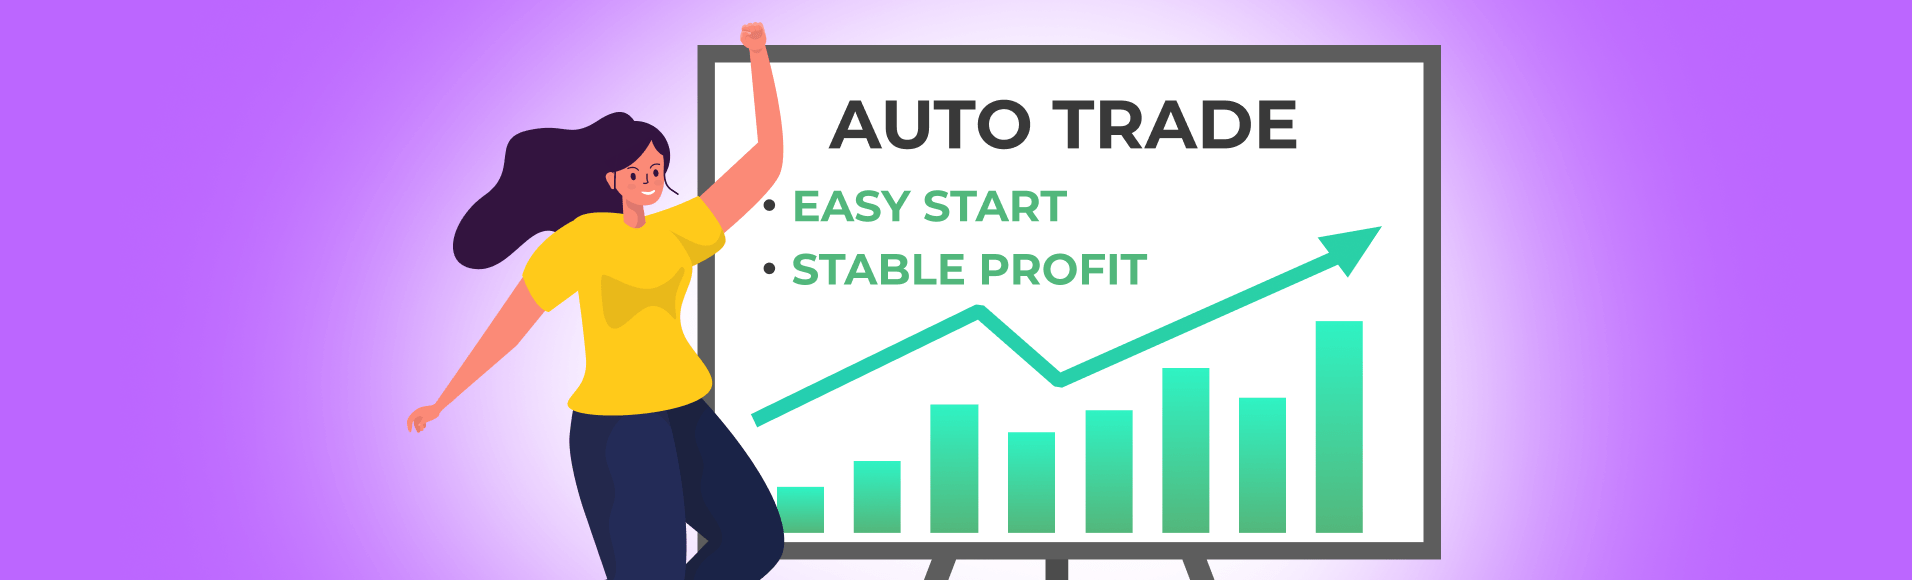 Comercio automático: comienzo fácil, beneficio estable.